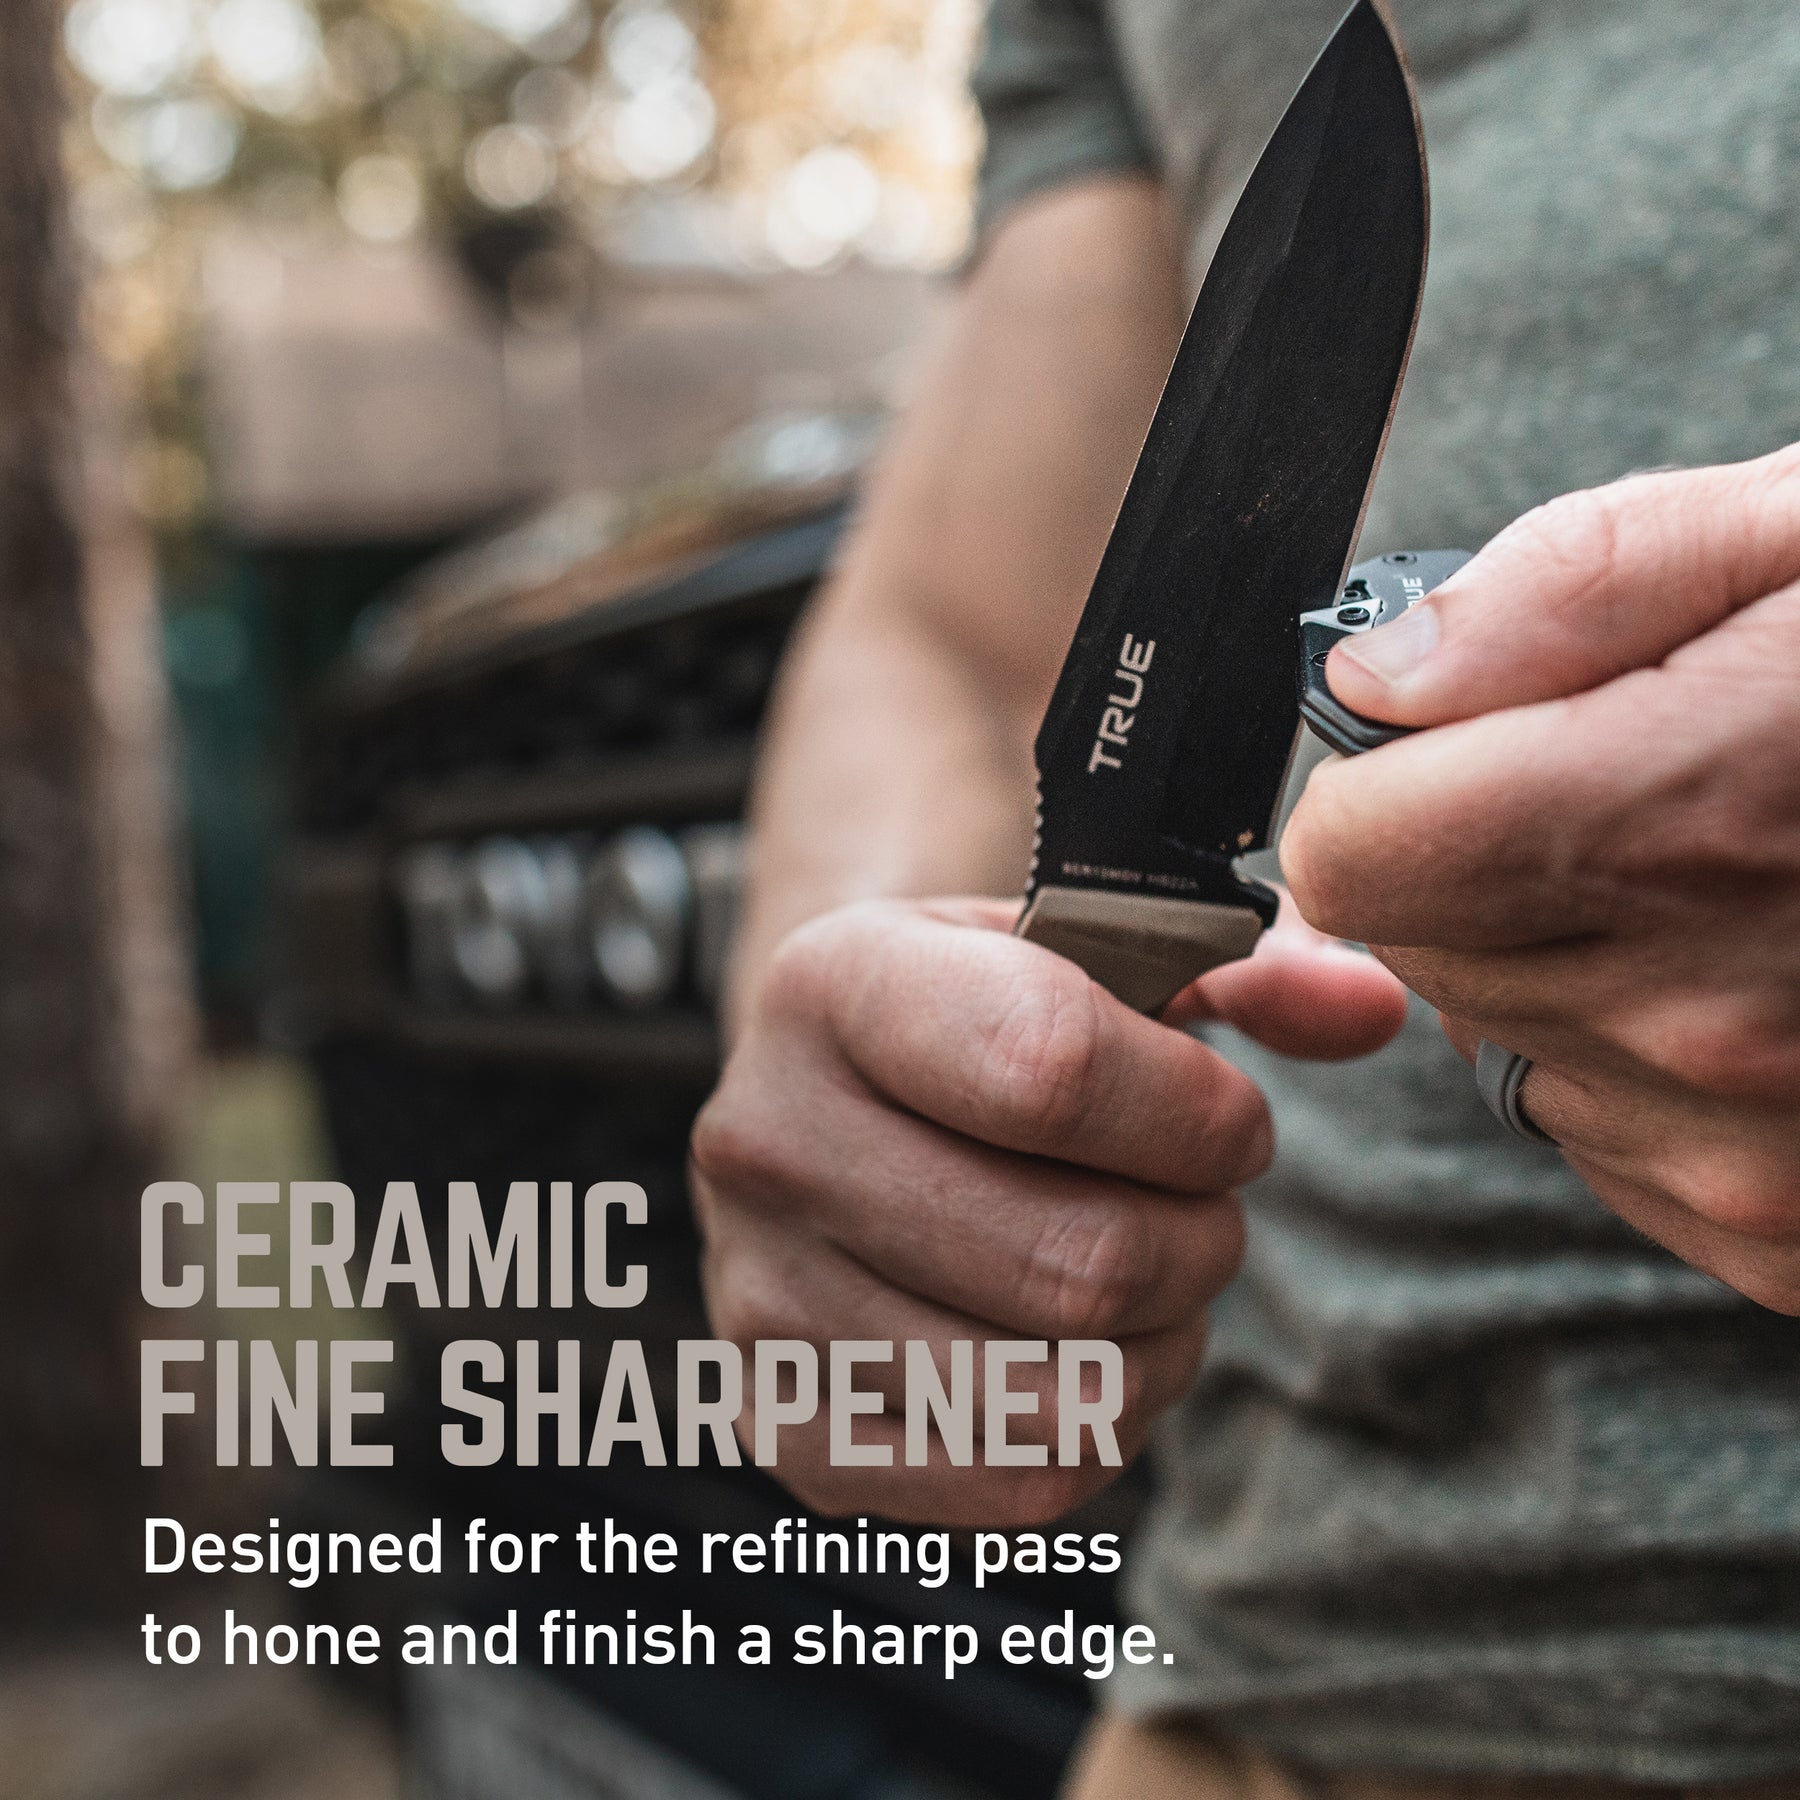 Mini Knife Sharpener Knives, Key Chain Knife Sharpener